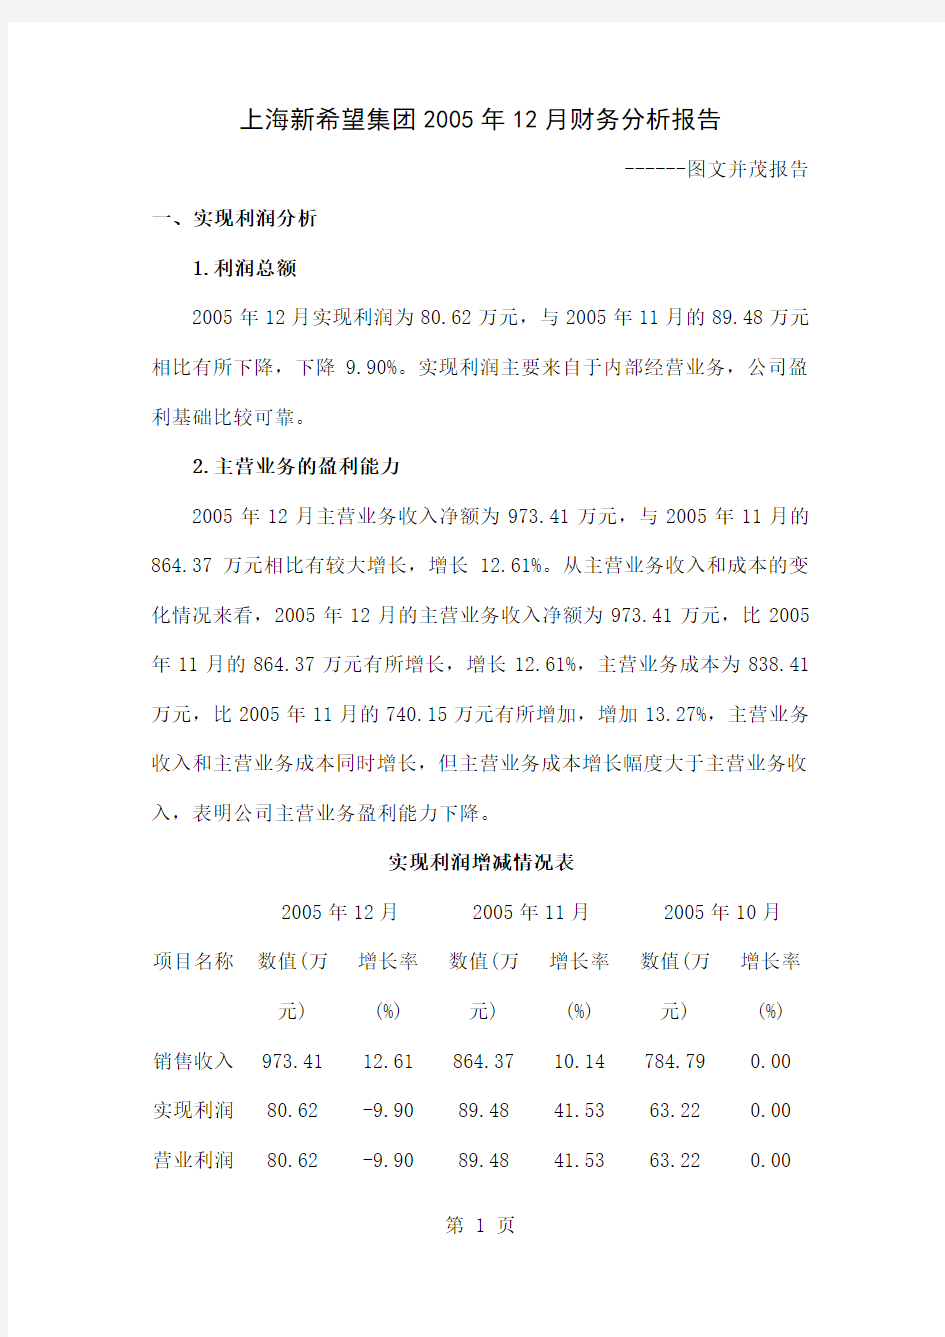 上海新希望集团2019年12月财务分析报告(图文并茂报告)精品文档15页